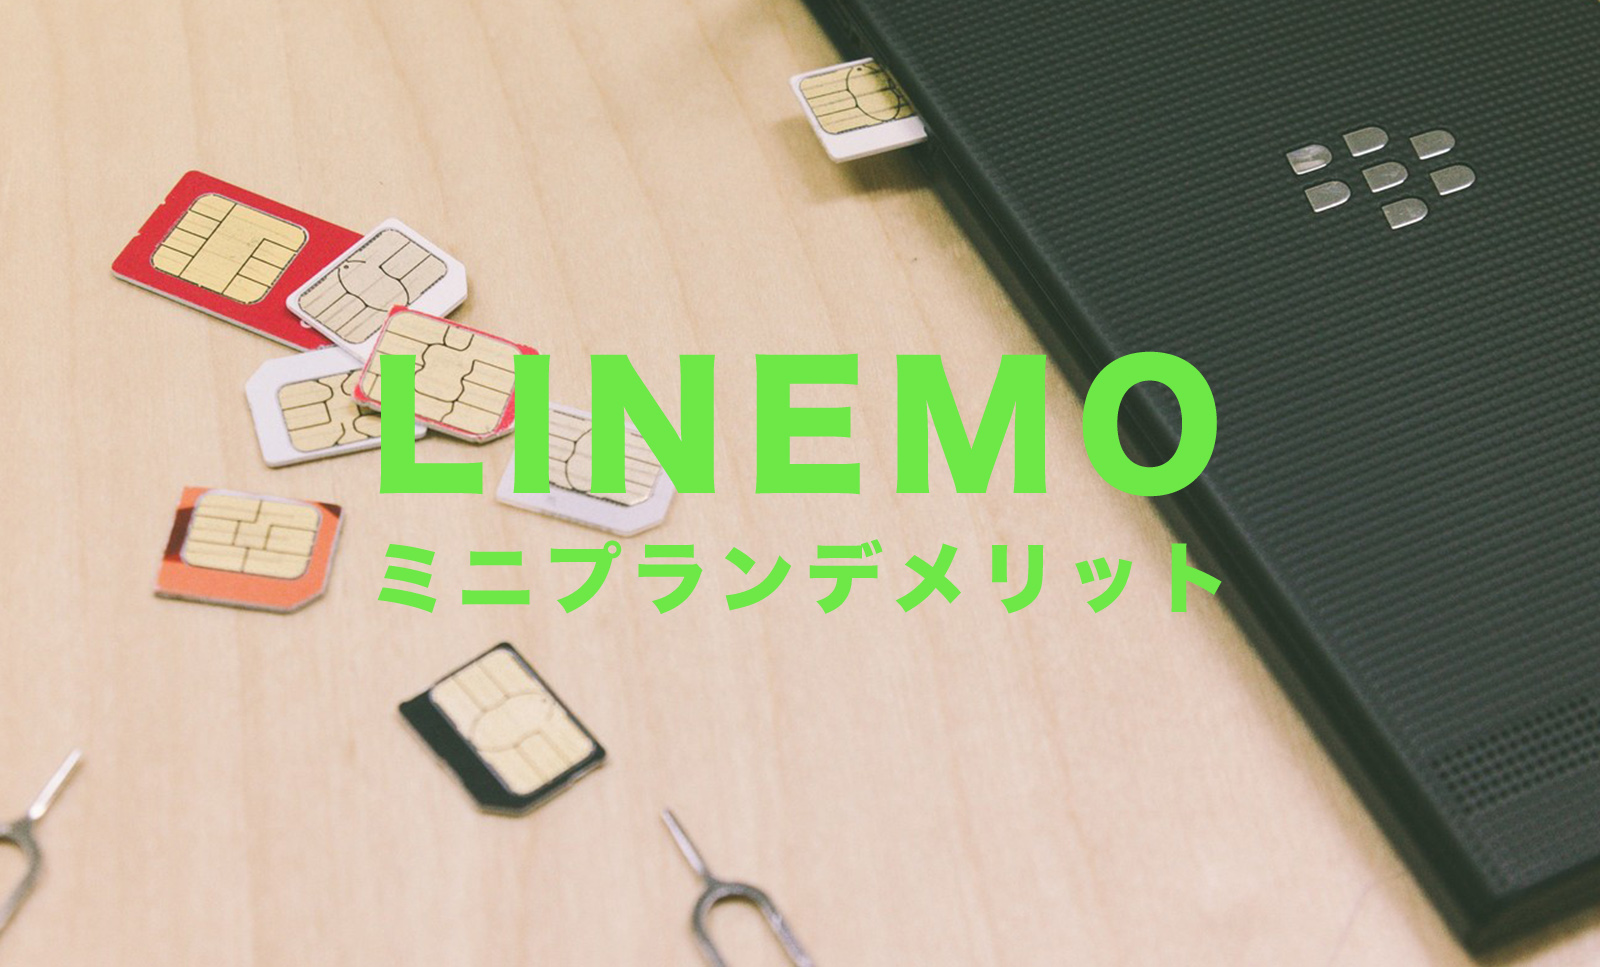 LINEMO(ラインモ)のミニプランのデメリット&メリットを解説！のサムネイル画像